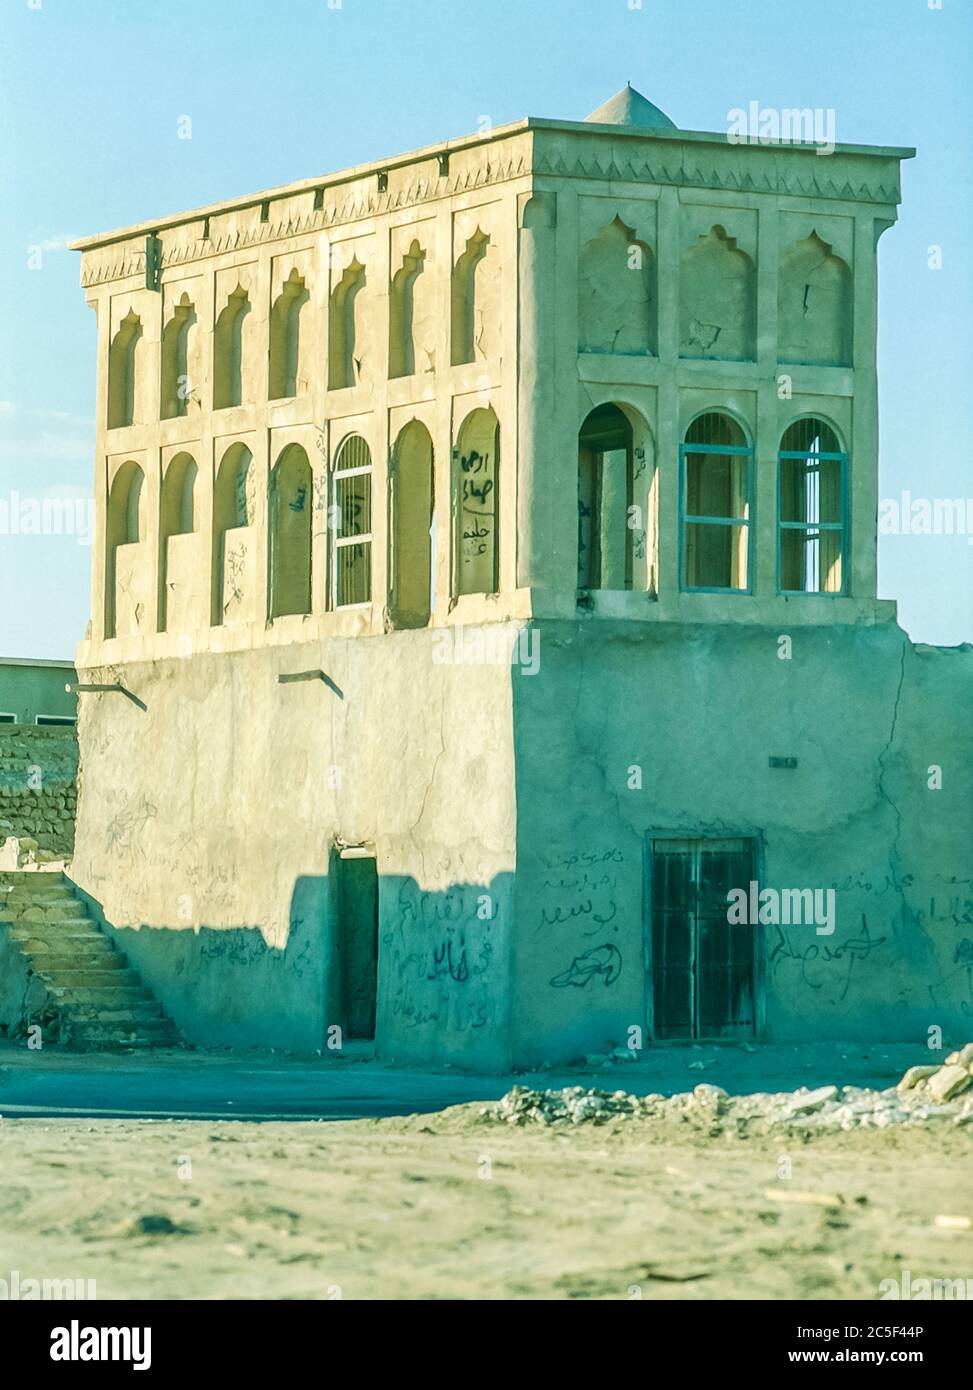 L'État du golfe Arabo-Persique du Qatar vers 1981-82 vu ici au village abandonné d'Al Wakrah près de Doha, après que les résidents ont déménagé vers de nouveaux logements Banque D'Images